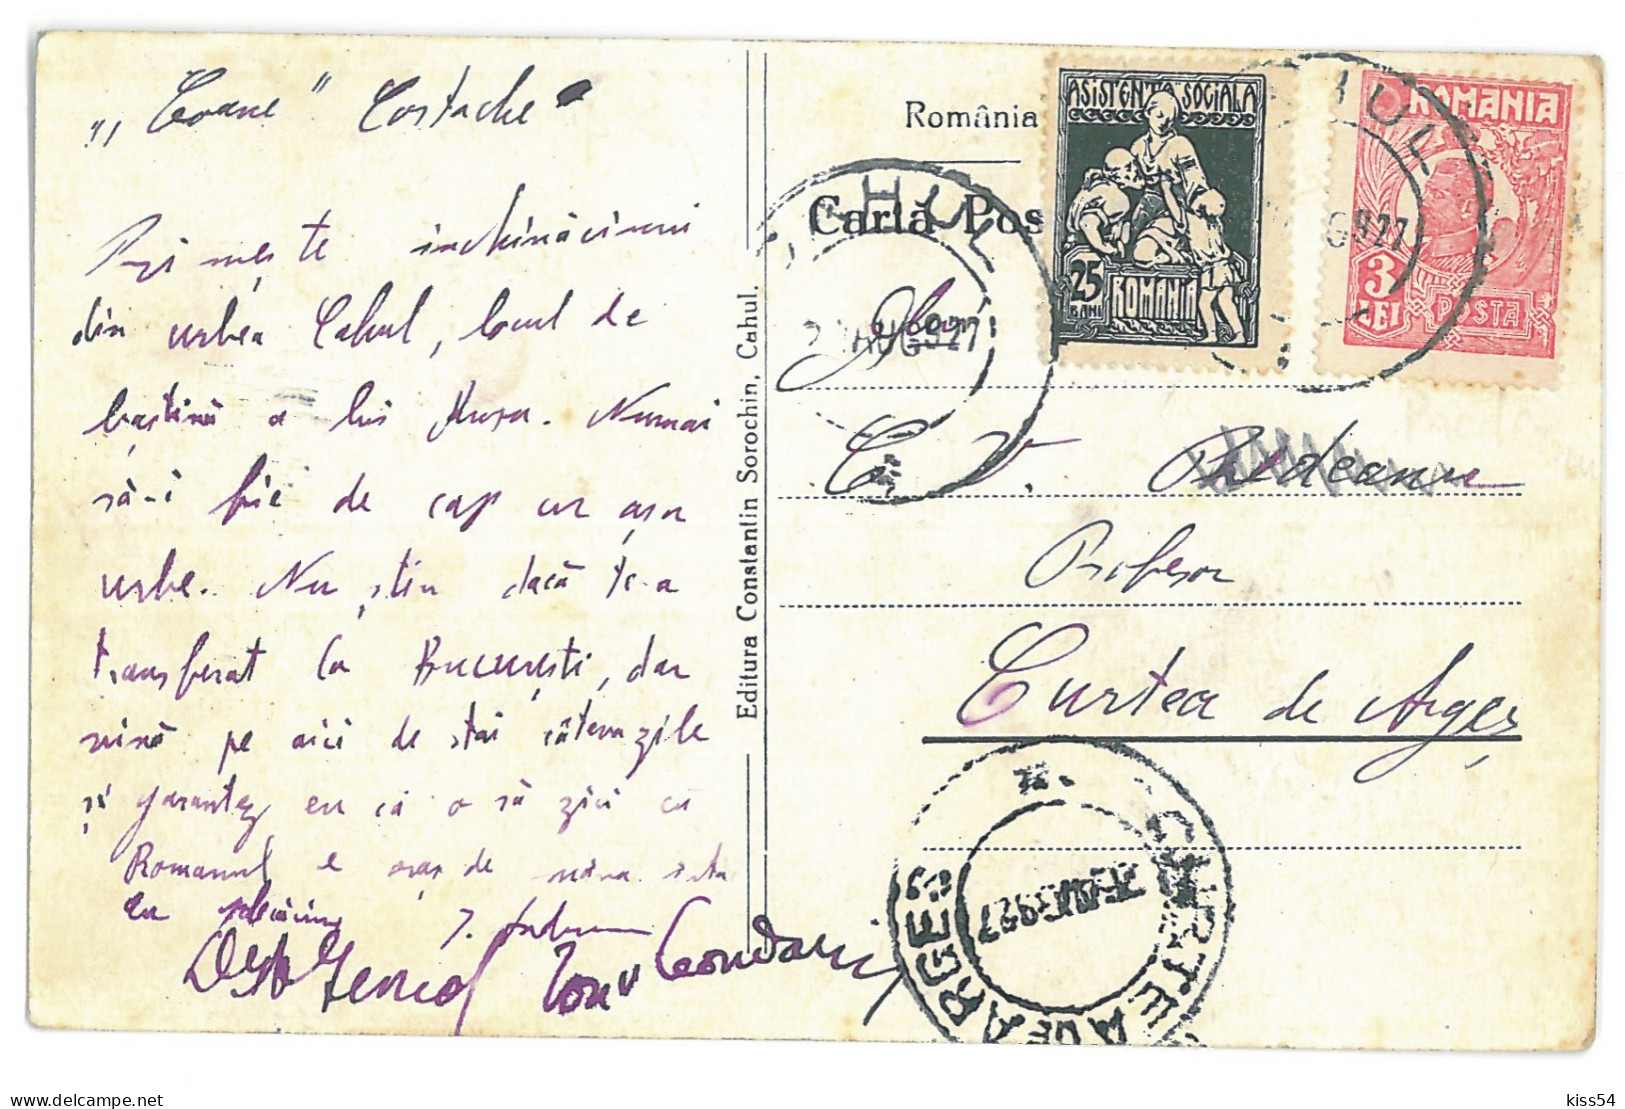 MOL 4 - 13918 KAHUL, Bessarabia, Moldova, High School Ion Voievod - Old Postcard - Used - 1927 - Moldavie